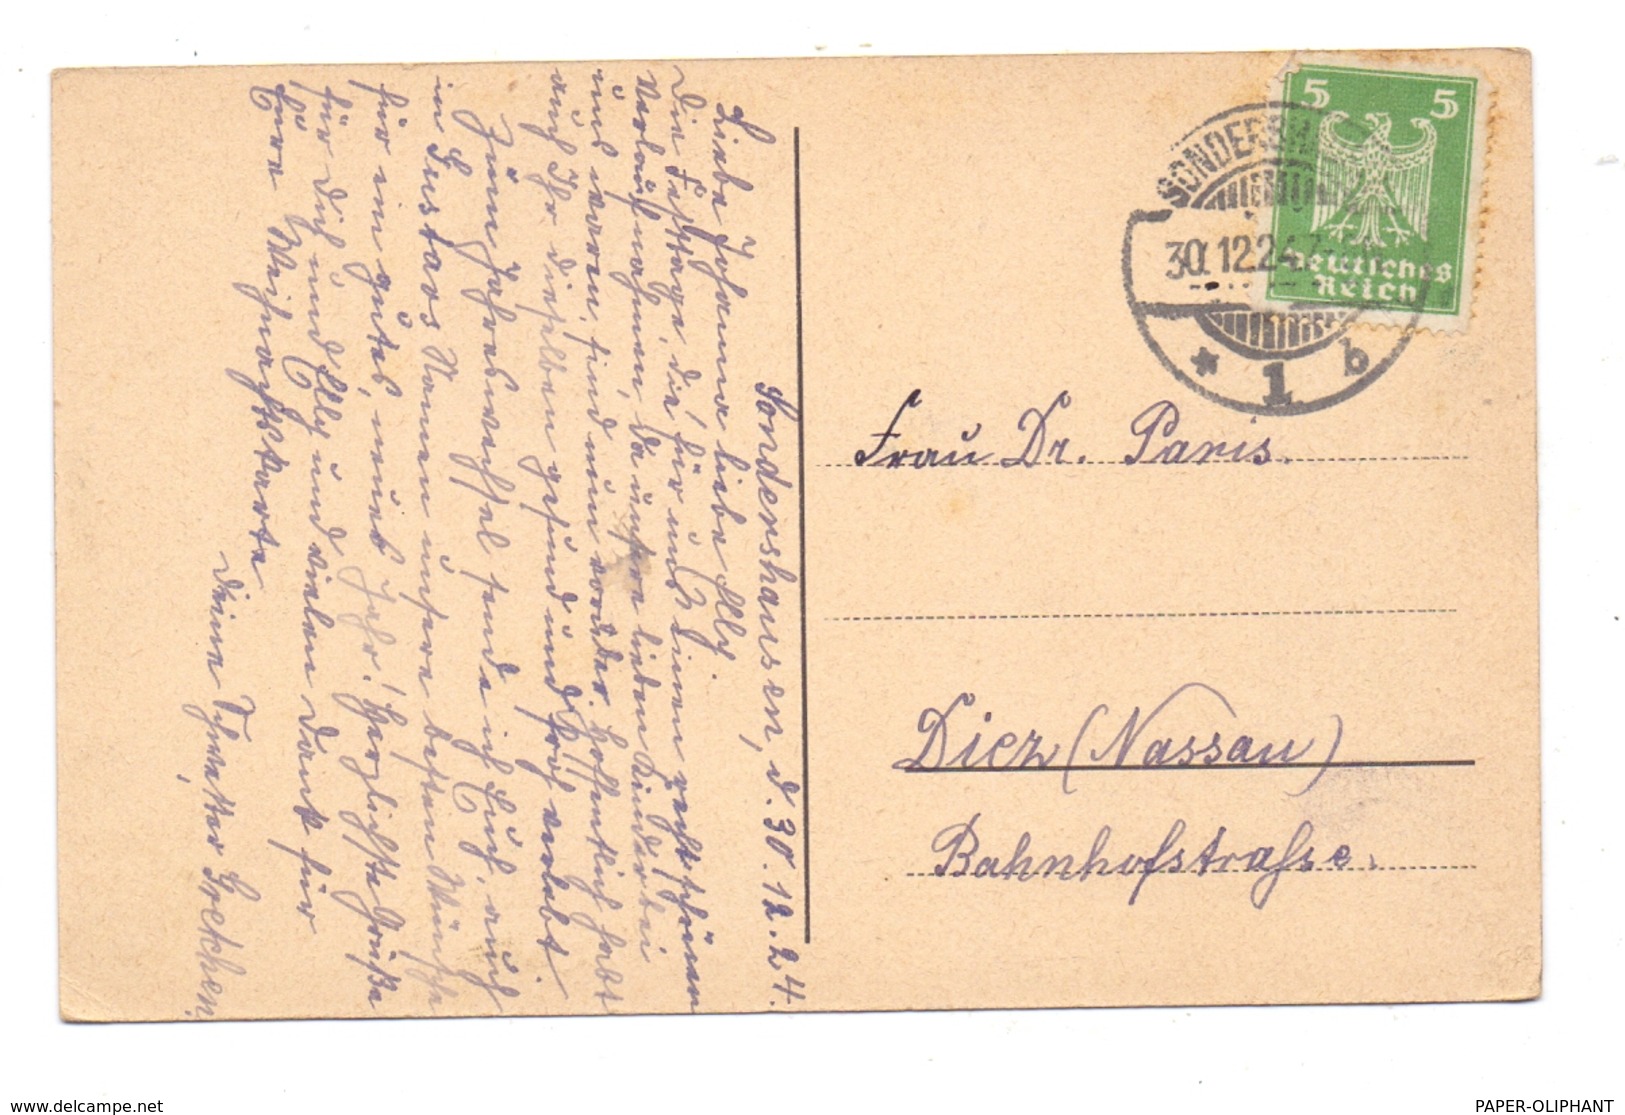 0-5400 SONDERSHAUSEN, Markt Mit Schloss, Künstler-Karte Curt Mücke, 1924 - Sondershausen